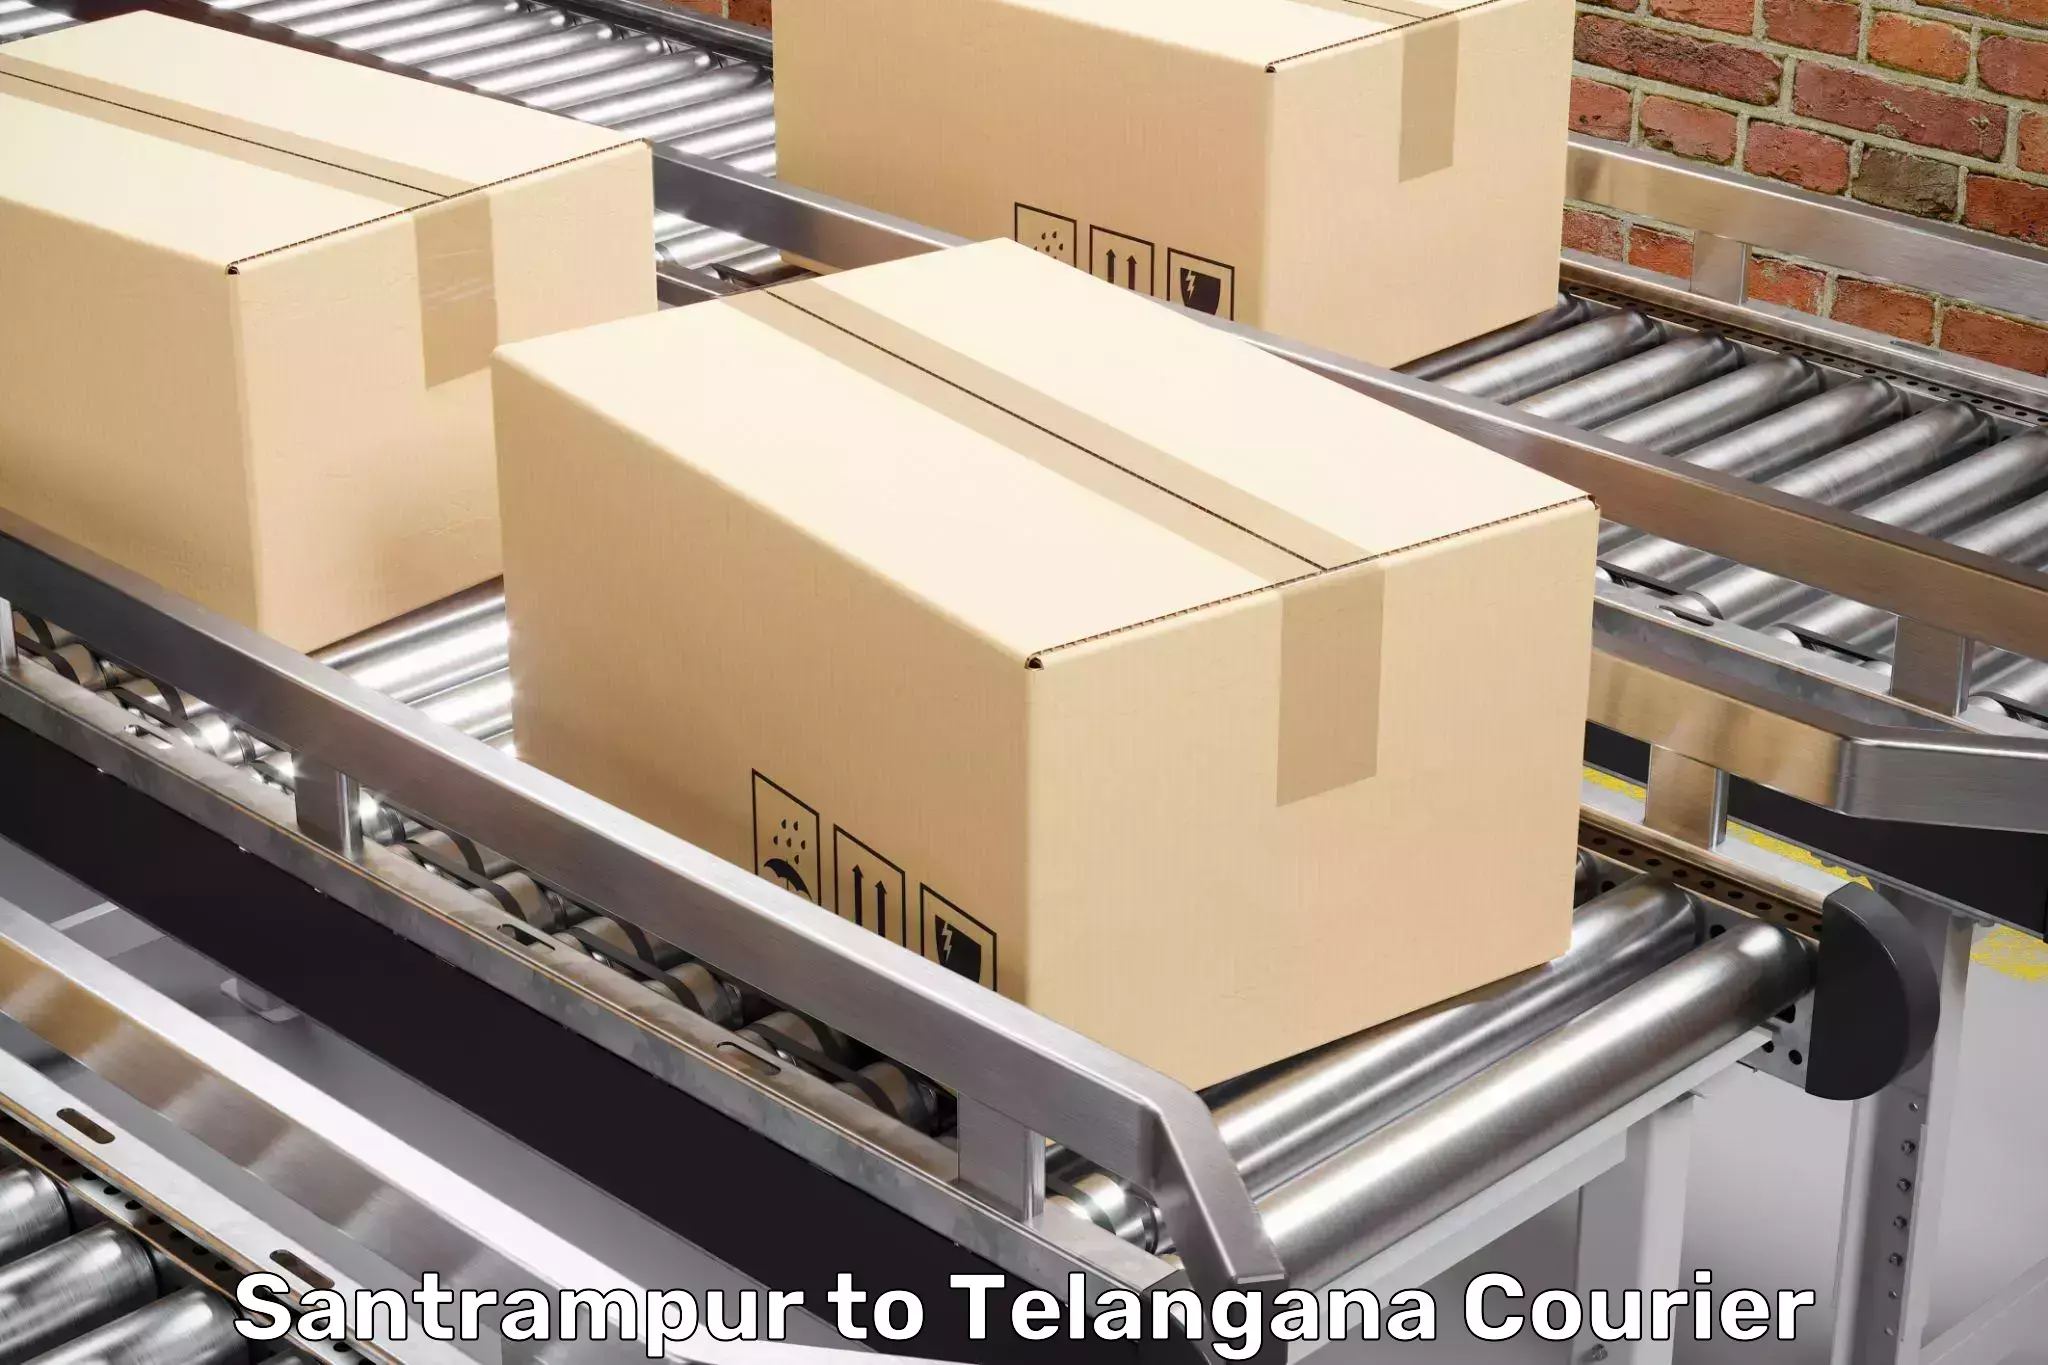 Stress-free moving Santrampur to Telangana